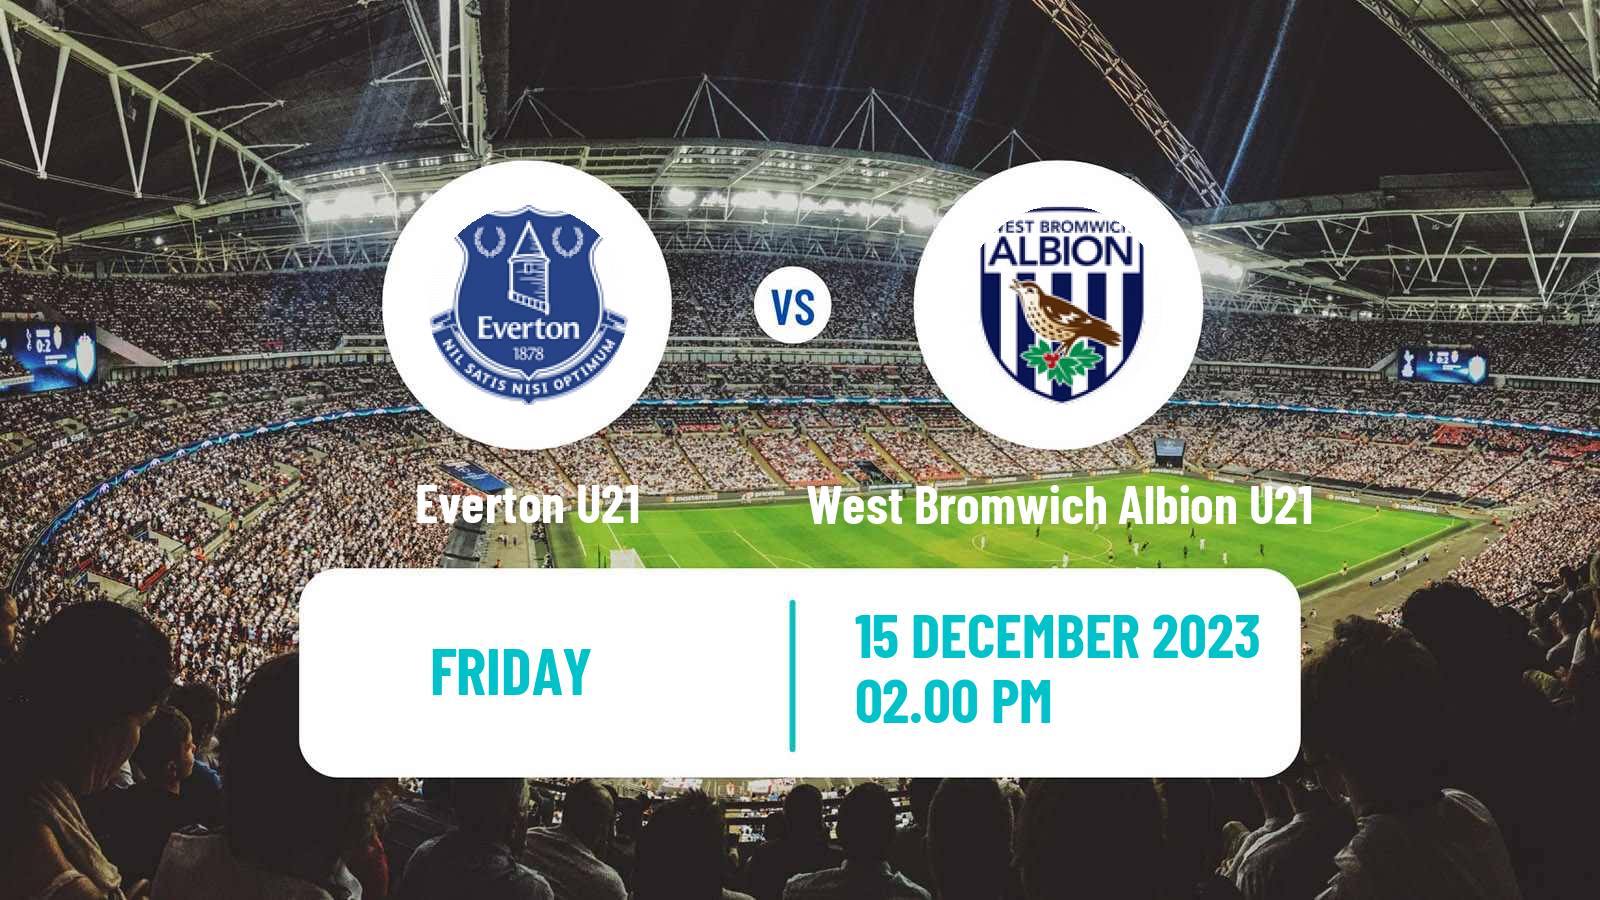 Soccer English Premier League 2 Everton U21 - West Bromwich Albion U21